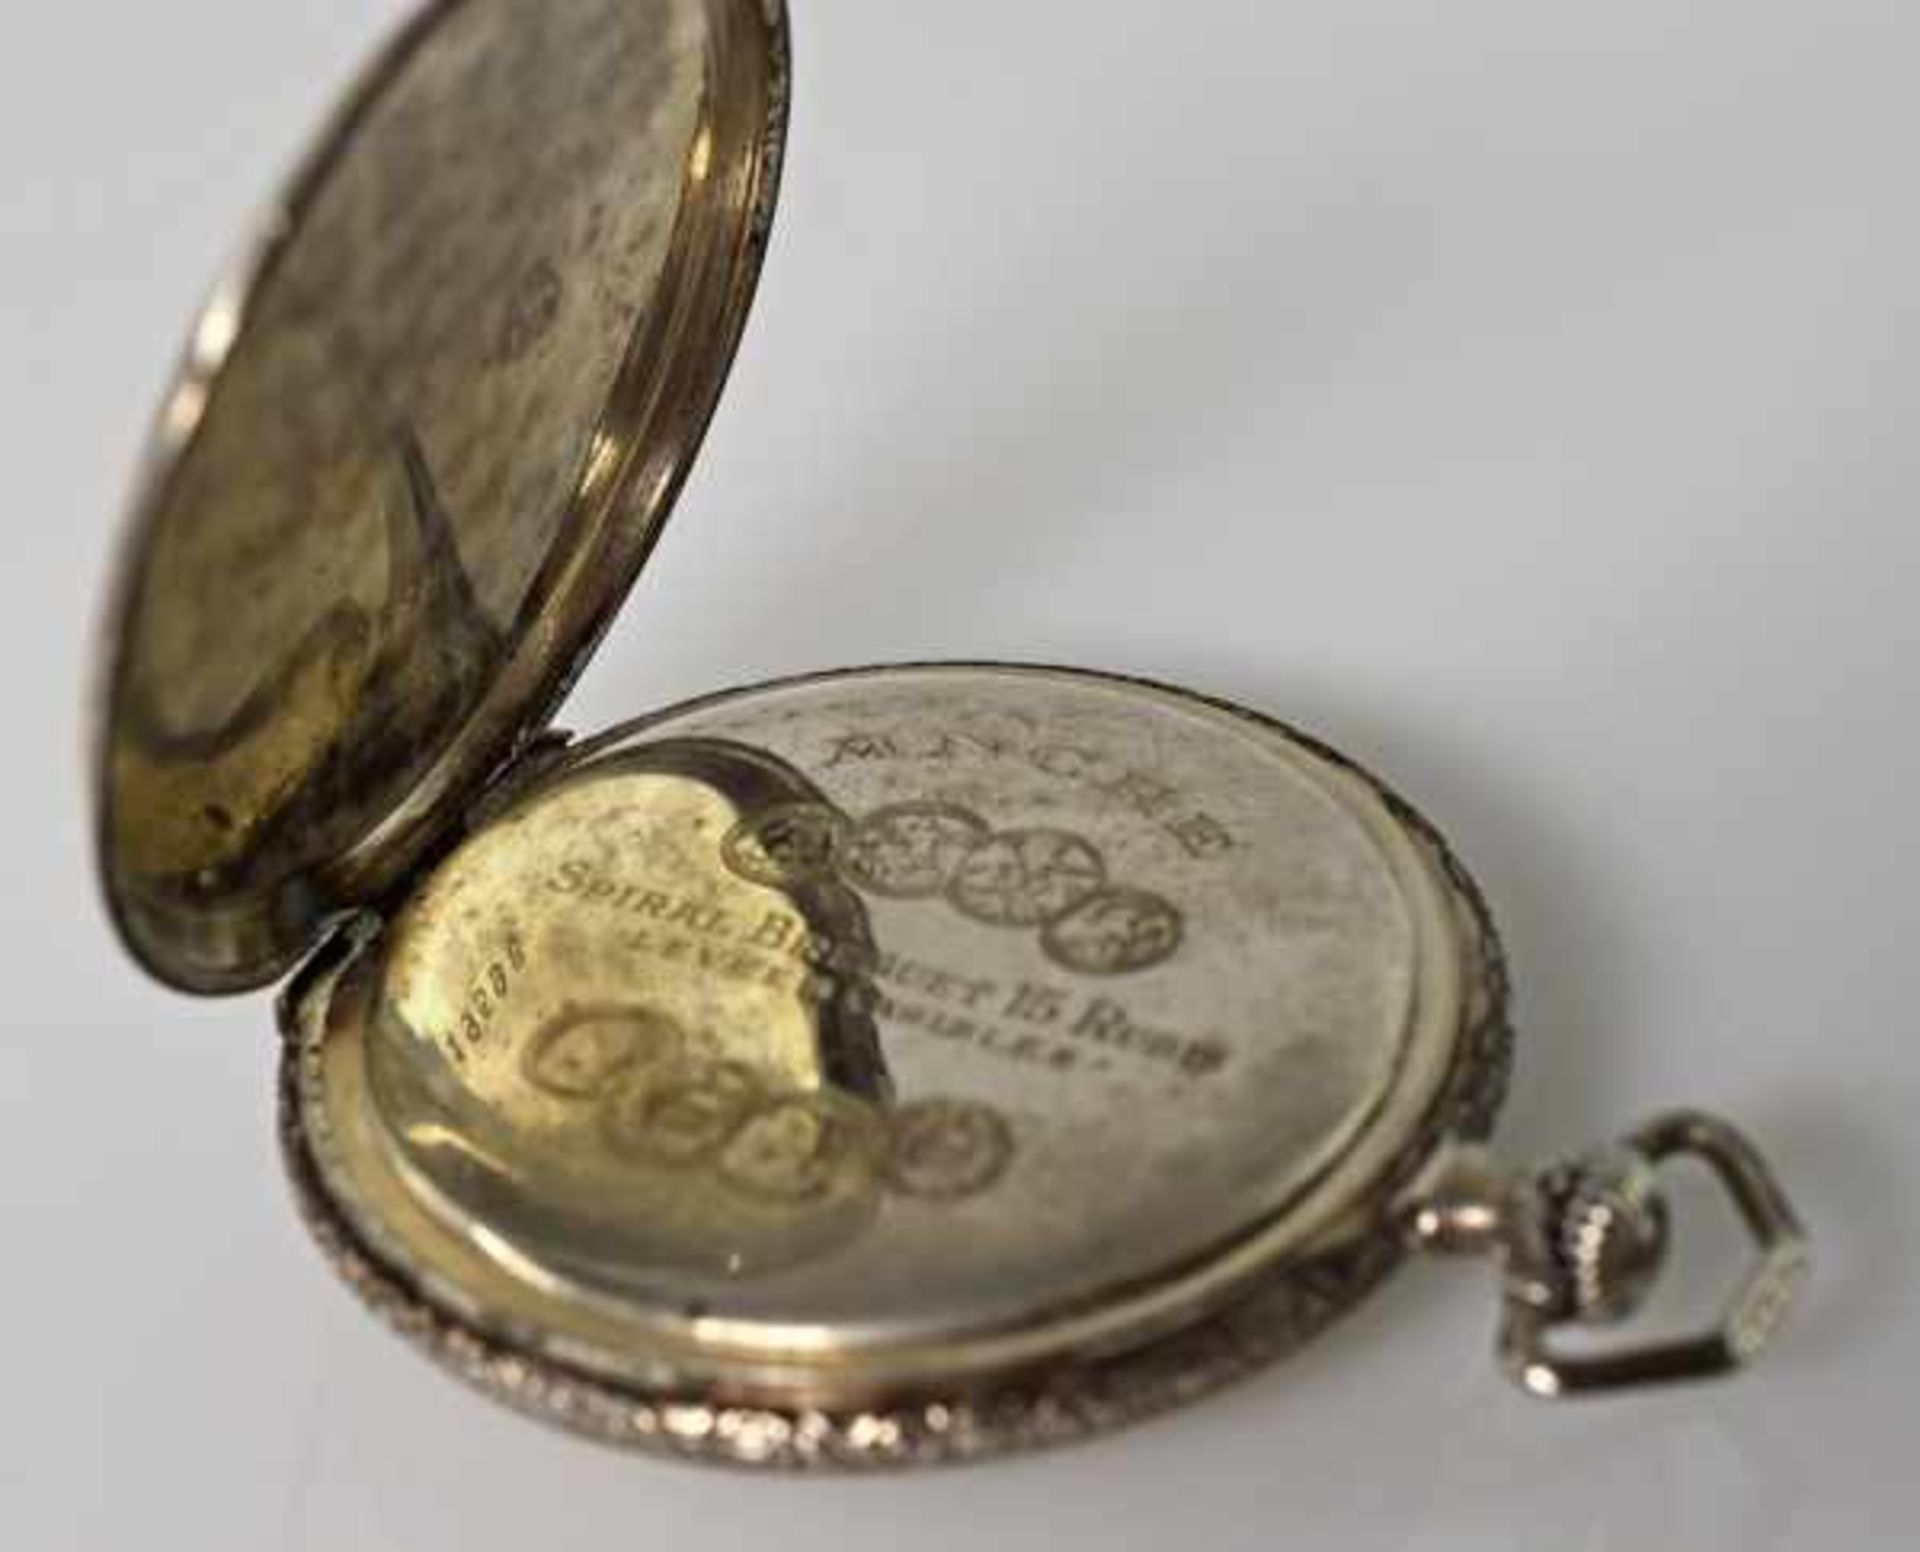 TASCHENUHR Chronomètre Prima, verziertes Silbergehäuse, goldfarbenes Ziffernblatt mit Rautendekor, - Image 2 of 2